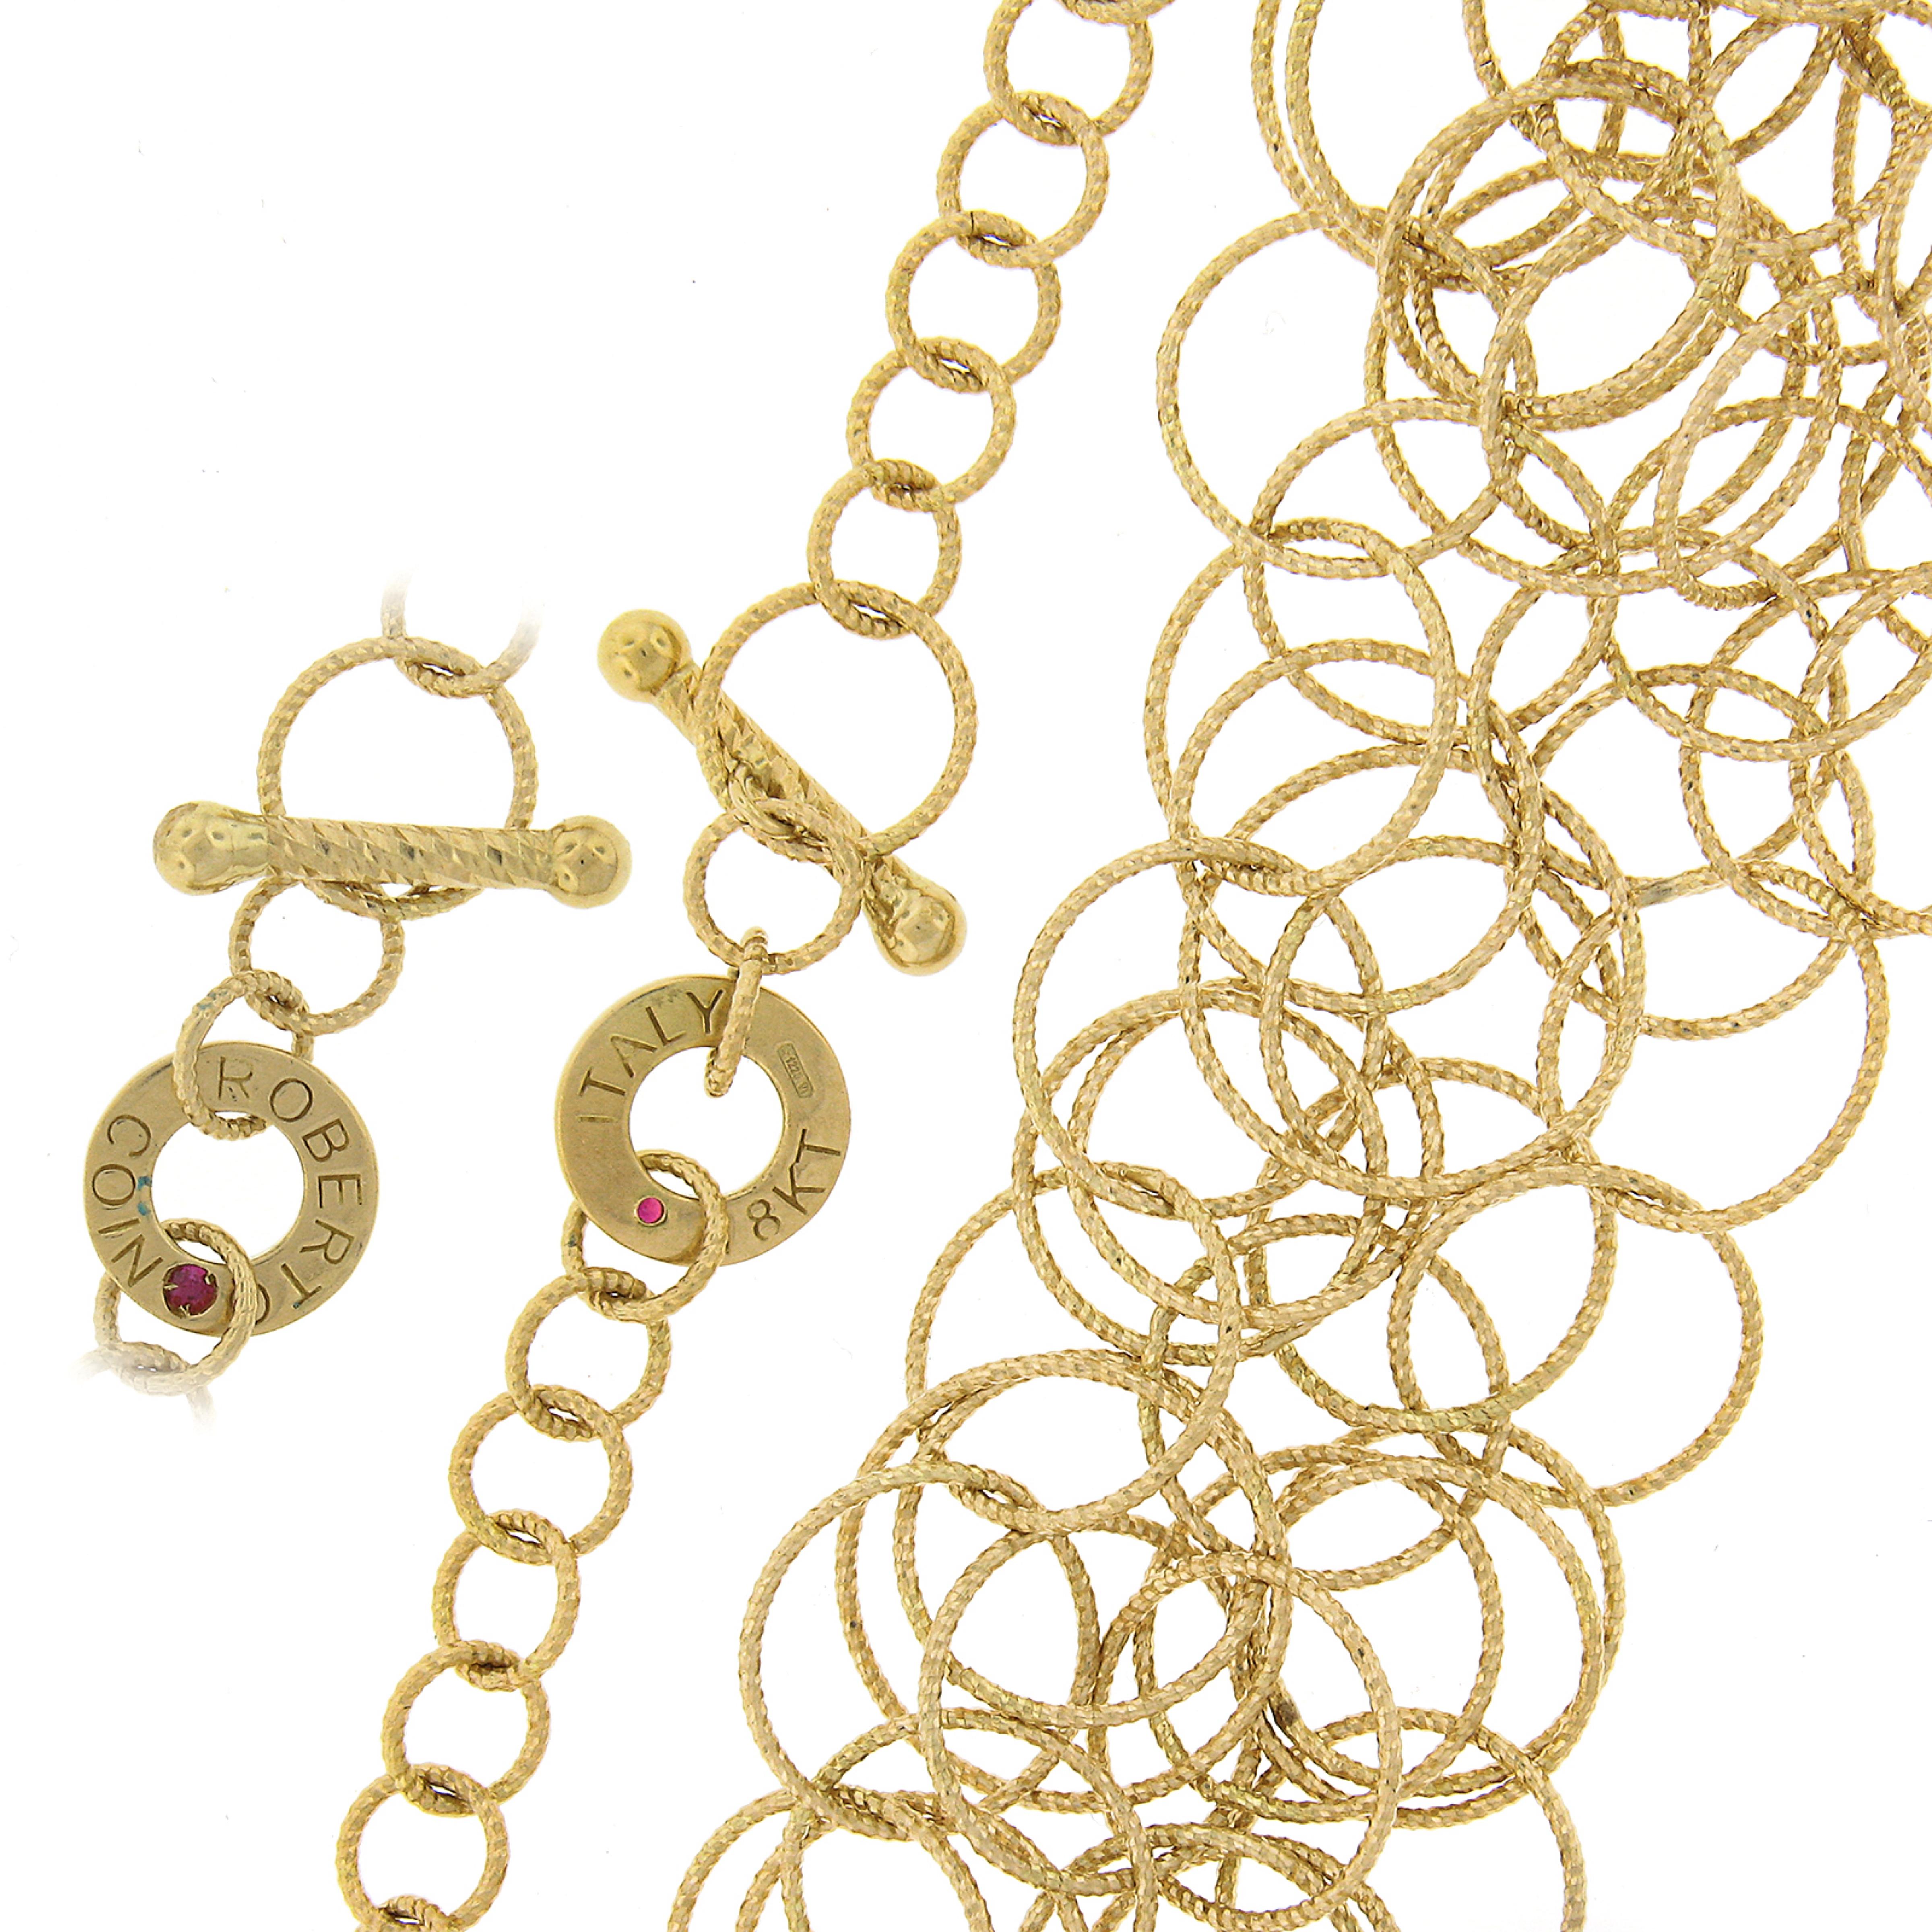 Women's Roberto Coin 18k Gold Textured Interlocking Round Link Mauresque Necklace For Sale